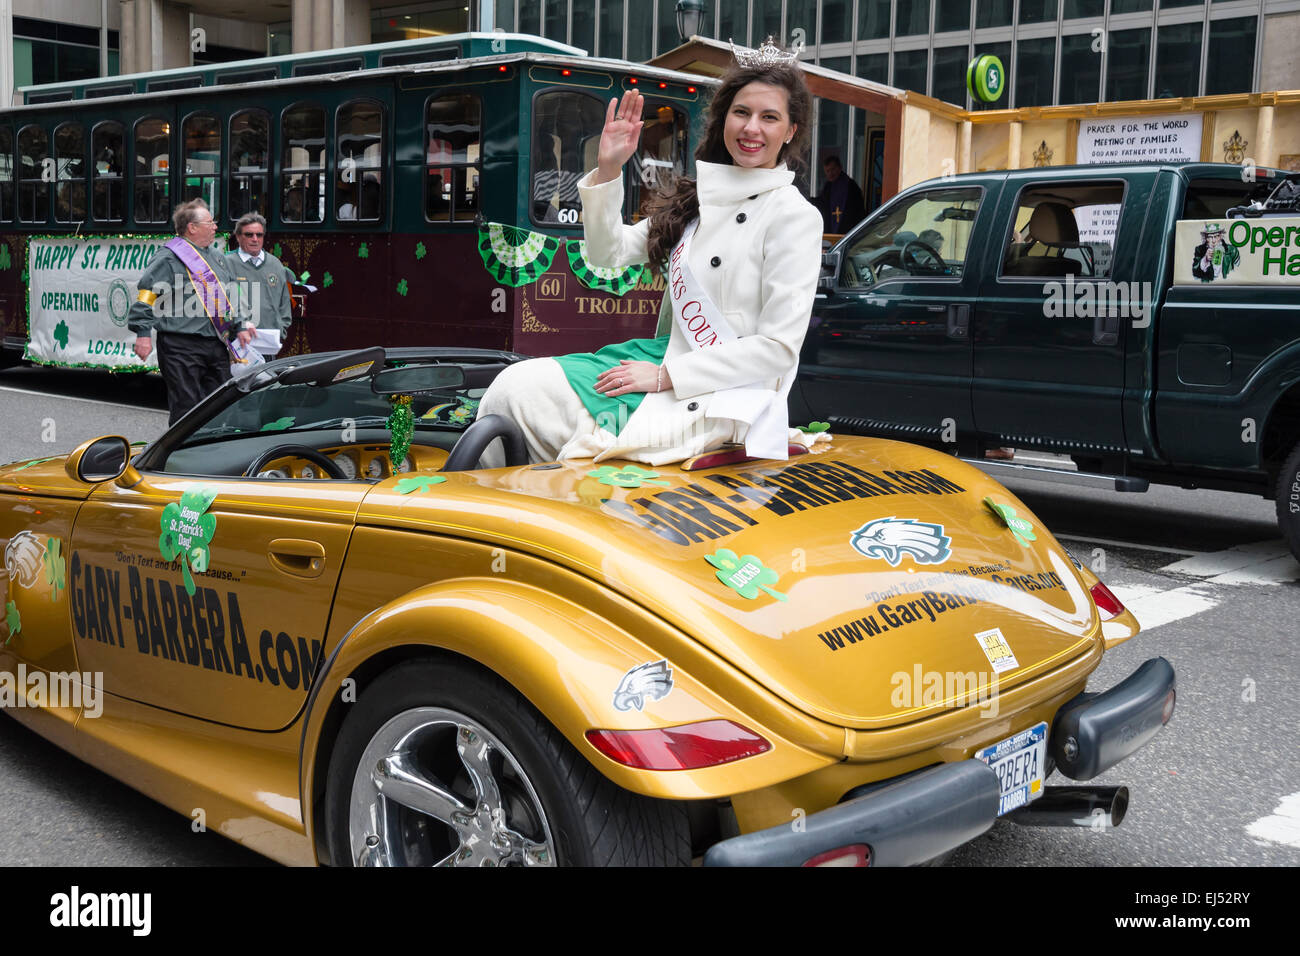 Accueille la parade belle jeune femme, parade de la Saint-Patrick, Philadelphie, PA, USA Banque D'Images